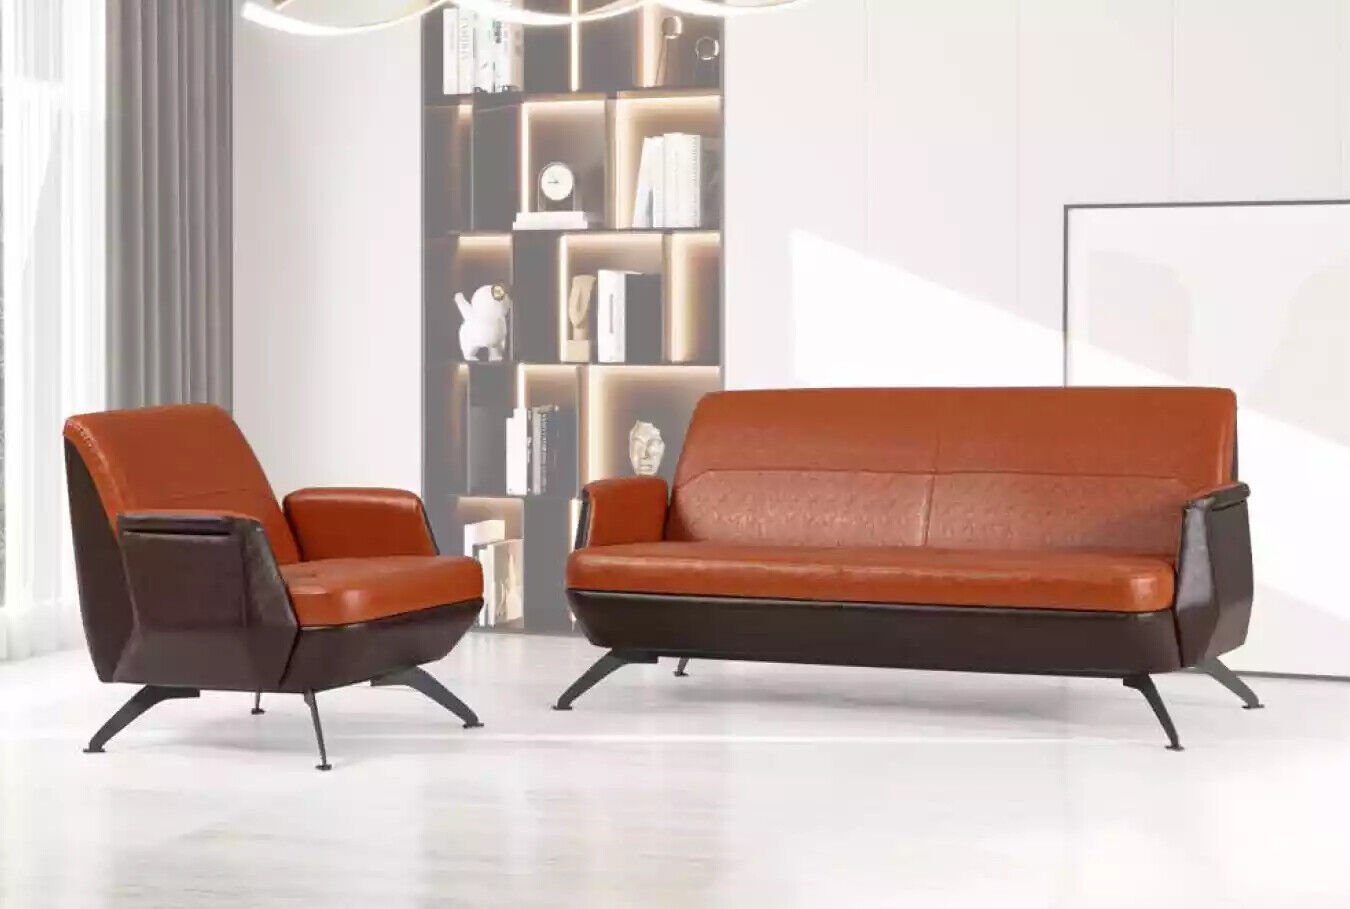 JVmoebel Sofa Sessel Zweisitzer Designer, Europe Sofasitzgarnitur In Luxus Arbeitszimmermöbel Made